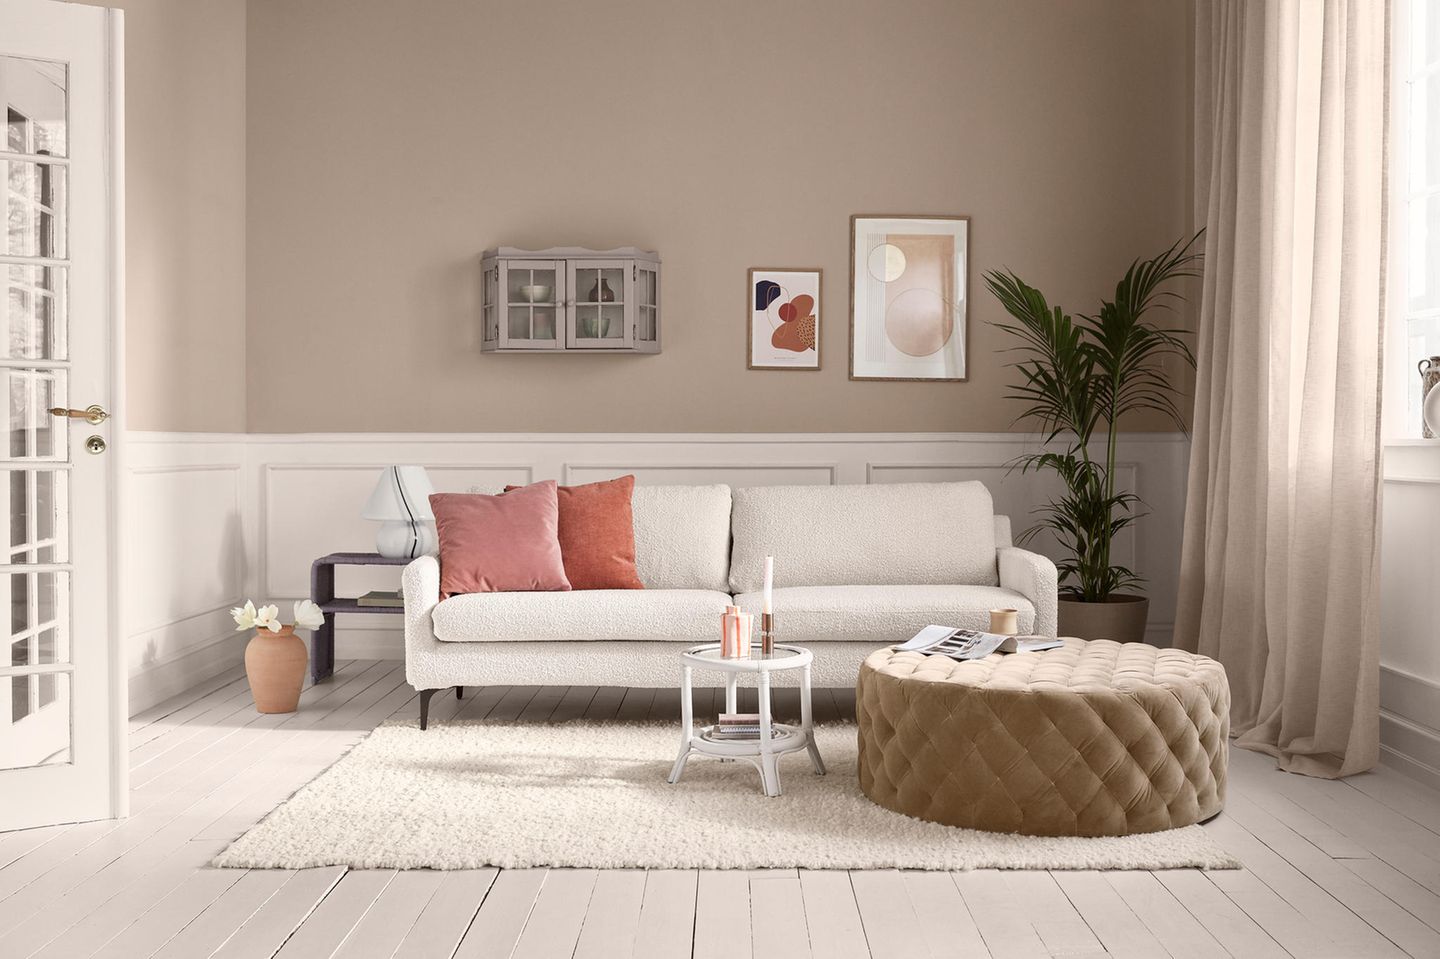 Wohnzimmer in einem Altbau mit cremefarbenem Sofa von Sofacompany